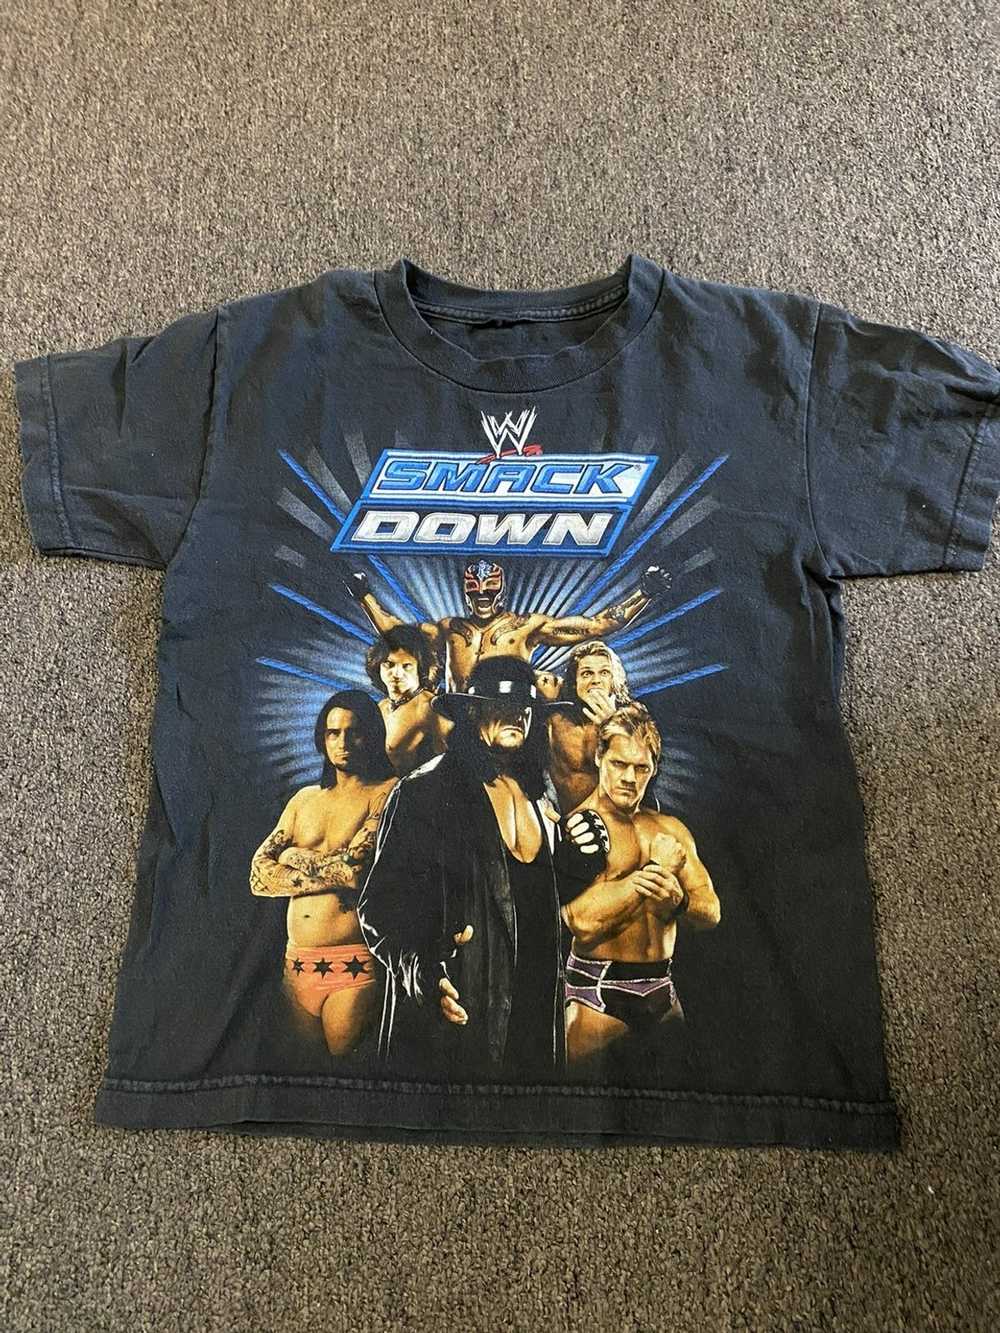 Wwe Vintage WWE Smackdown shirt - image 1